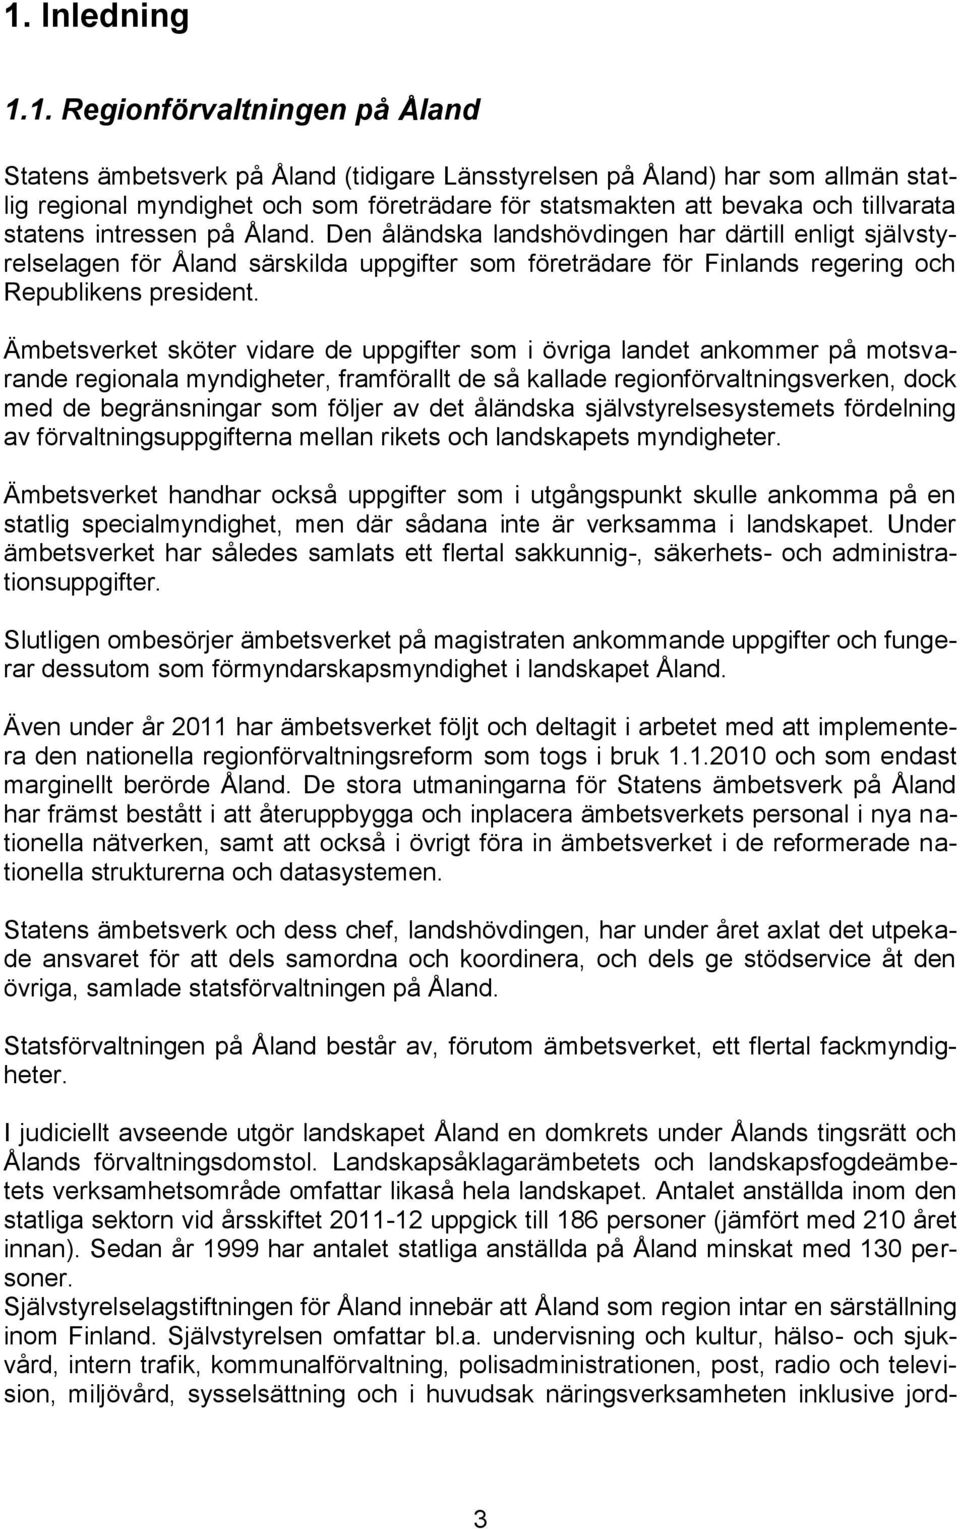 Den åländska landshövdingen har därtill enligt självstyrelselagen för Åland särskilda uppgifter som företrädare för Finlands regering och Republikens president.